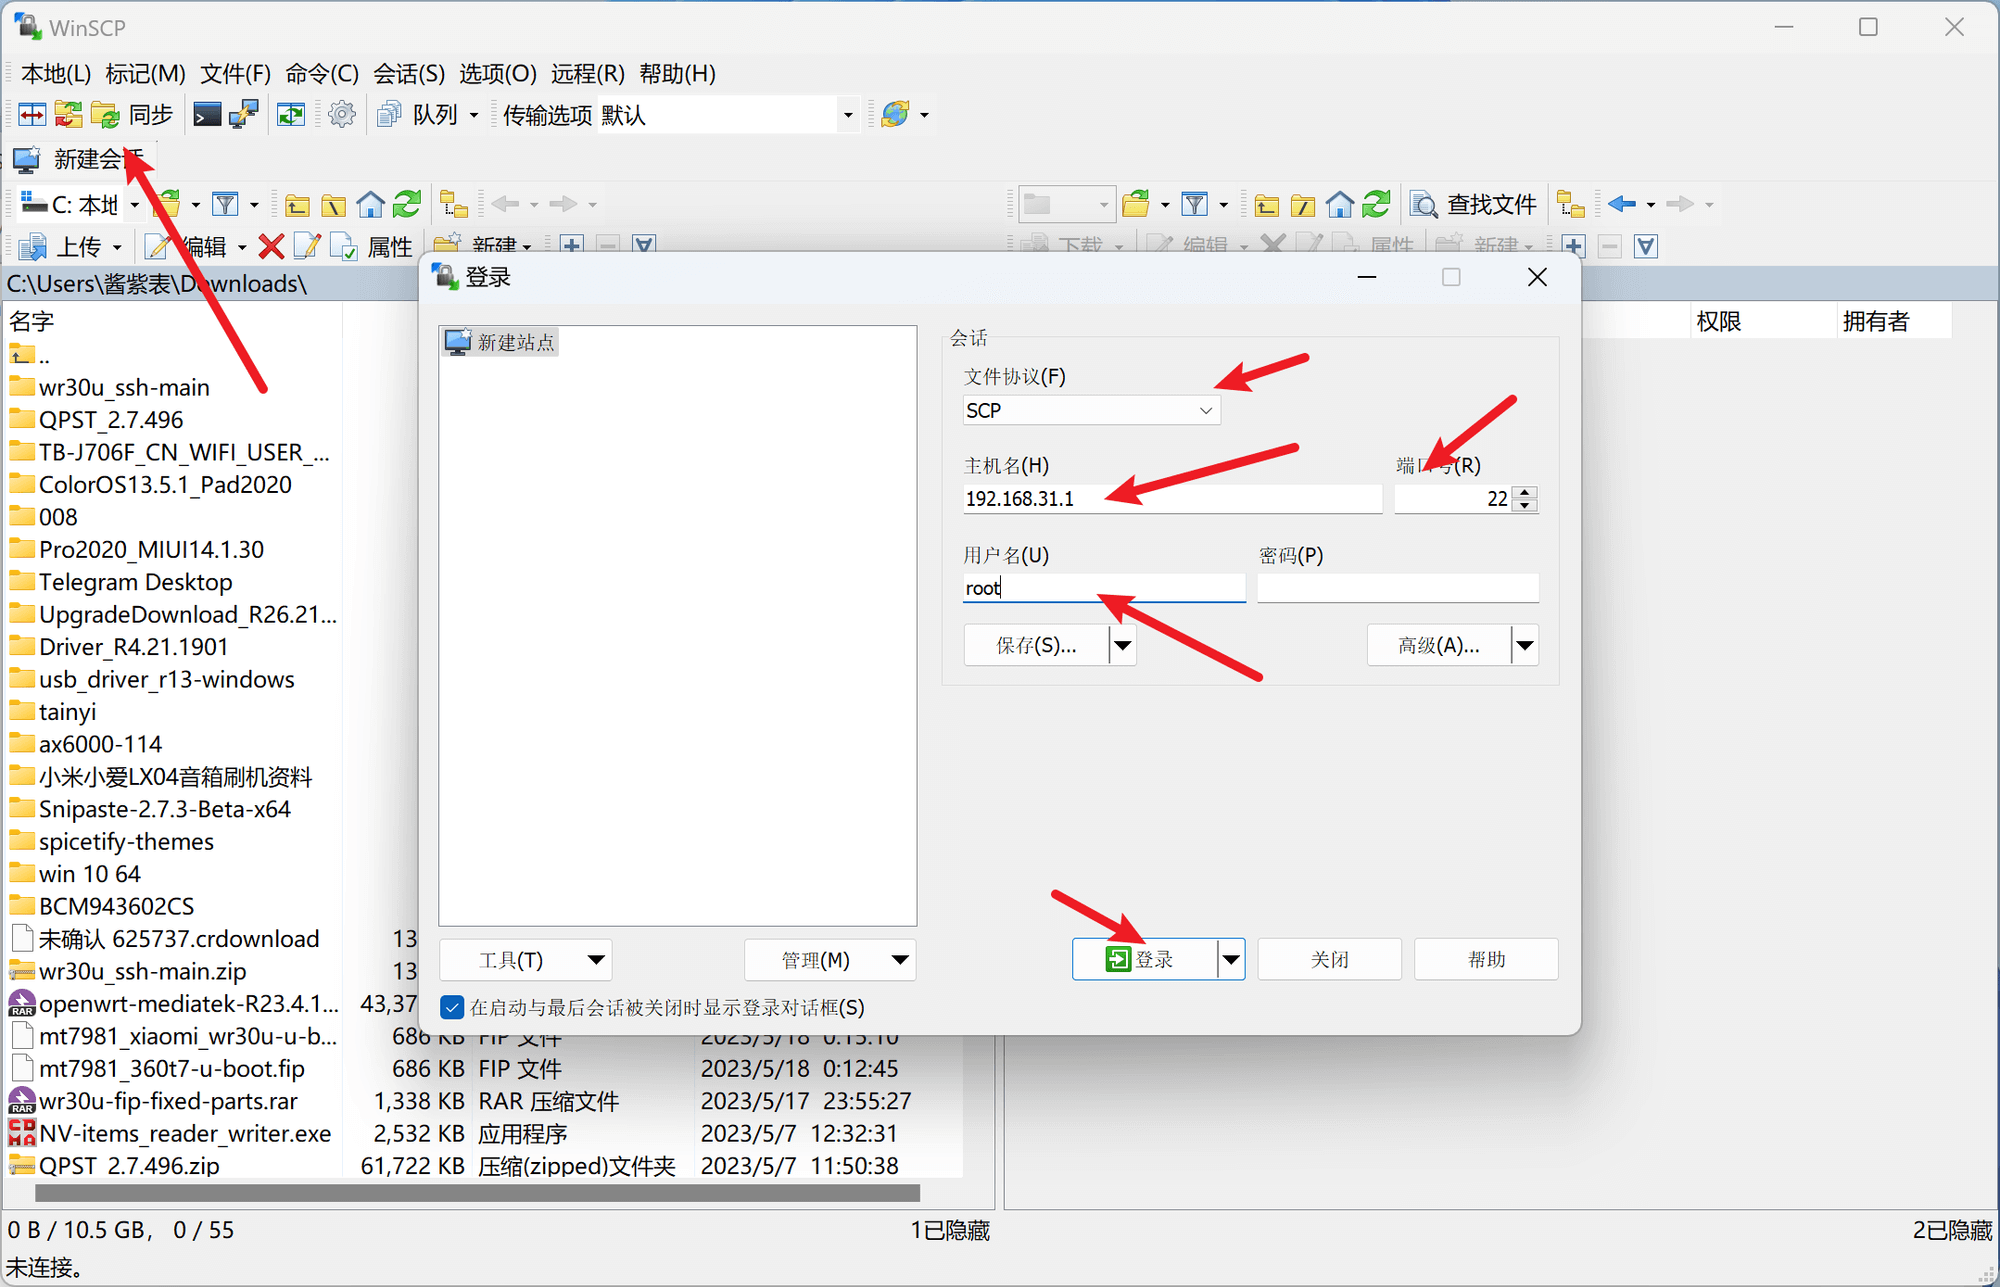 小米Redmi路由器AX3000(WR30U联通定制版)解锁 SSH 刷 openwrt